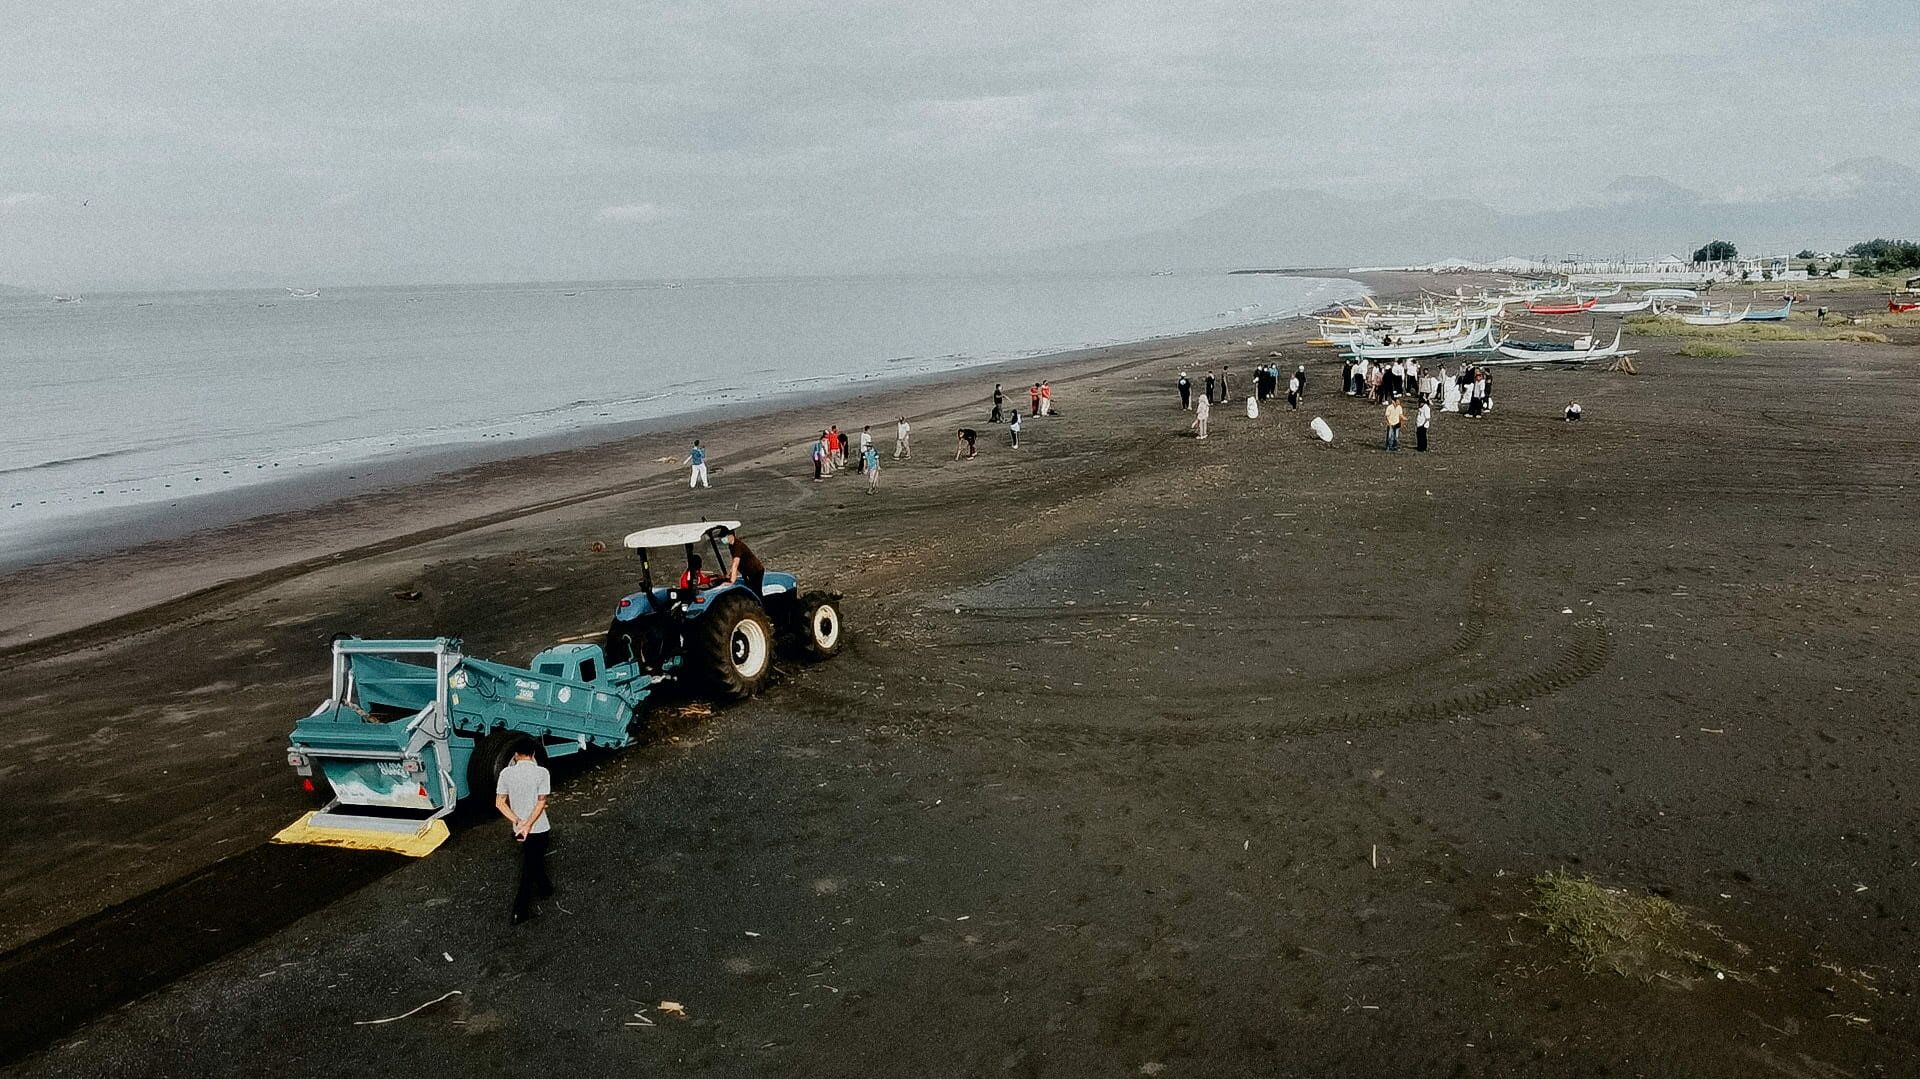 BeachTech colabora en la campaña de limpieza de playas junto con la Alliance to End Plastic Waste y "Clean4Change